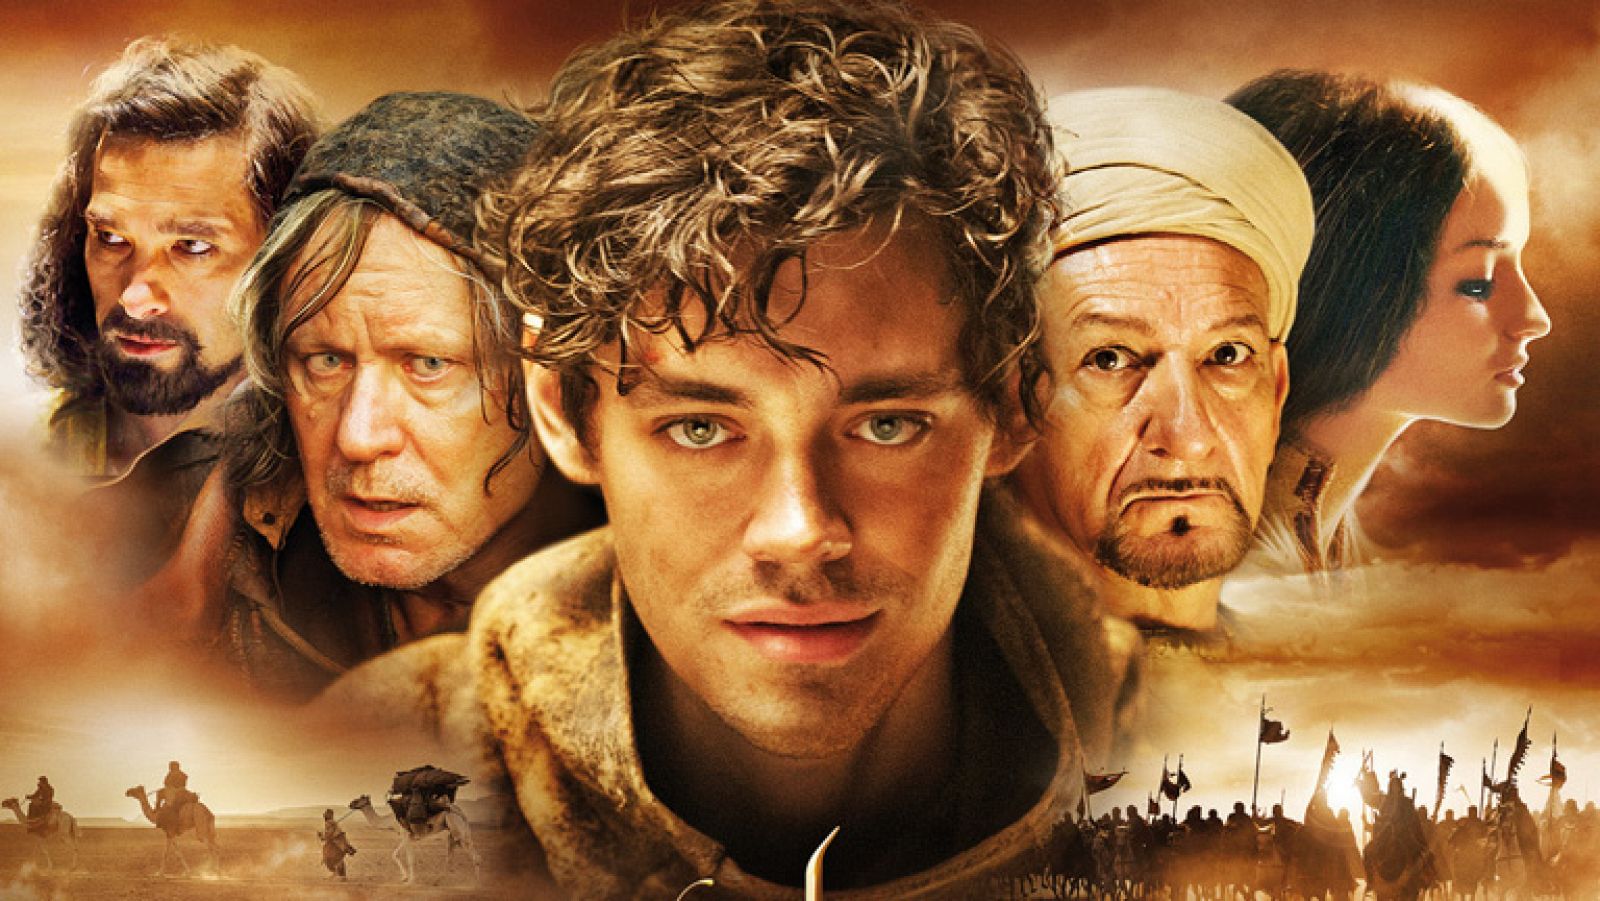 Cultura en Rtve.es: Philipp Stölzl: "'El médico' es una gran película clásica de aventuras" | RTVE Play